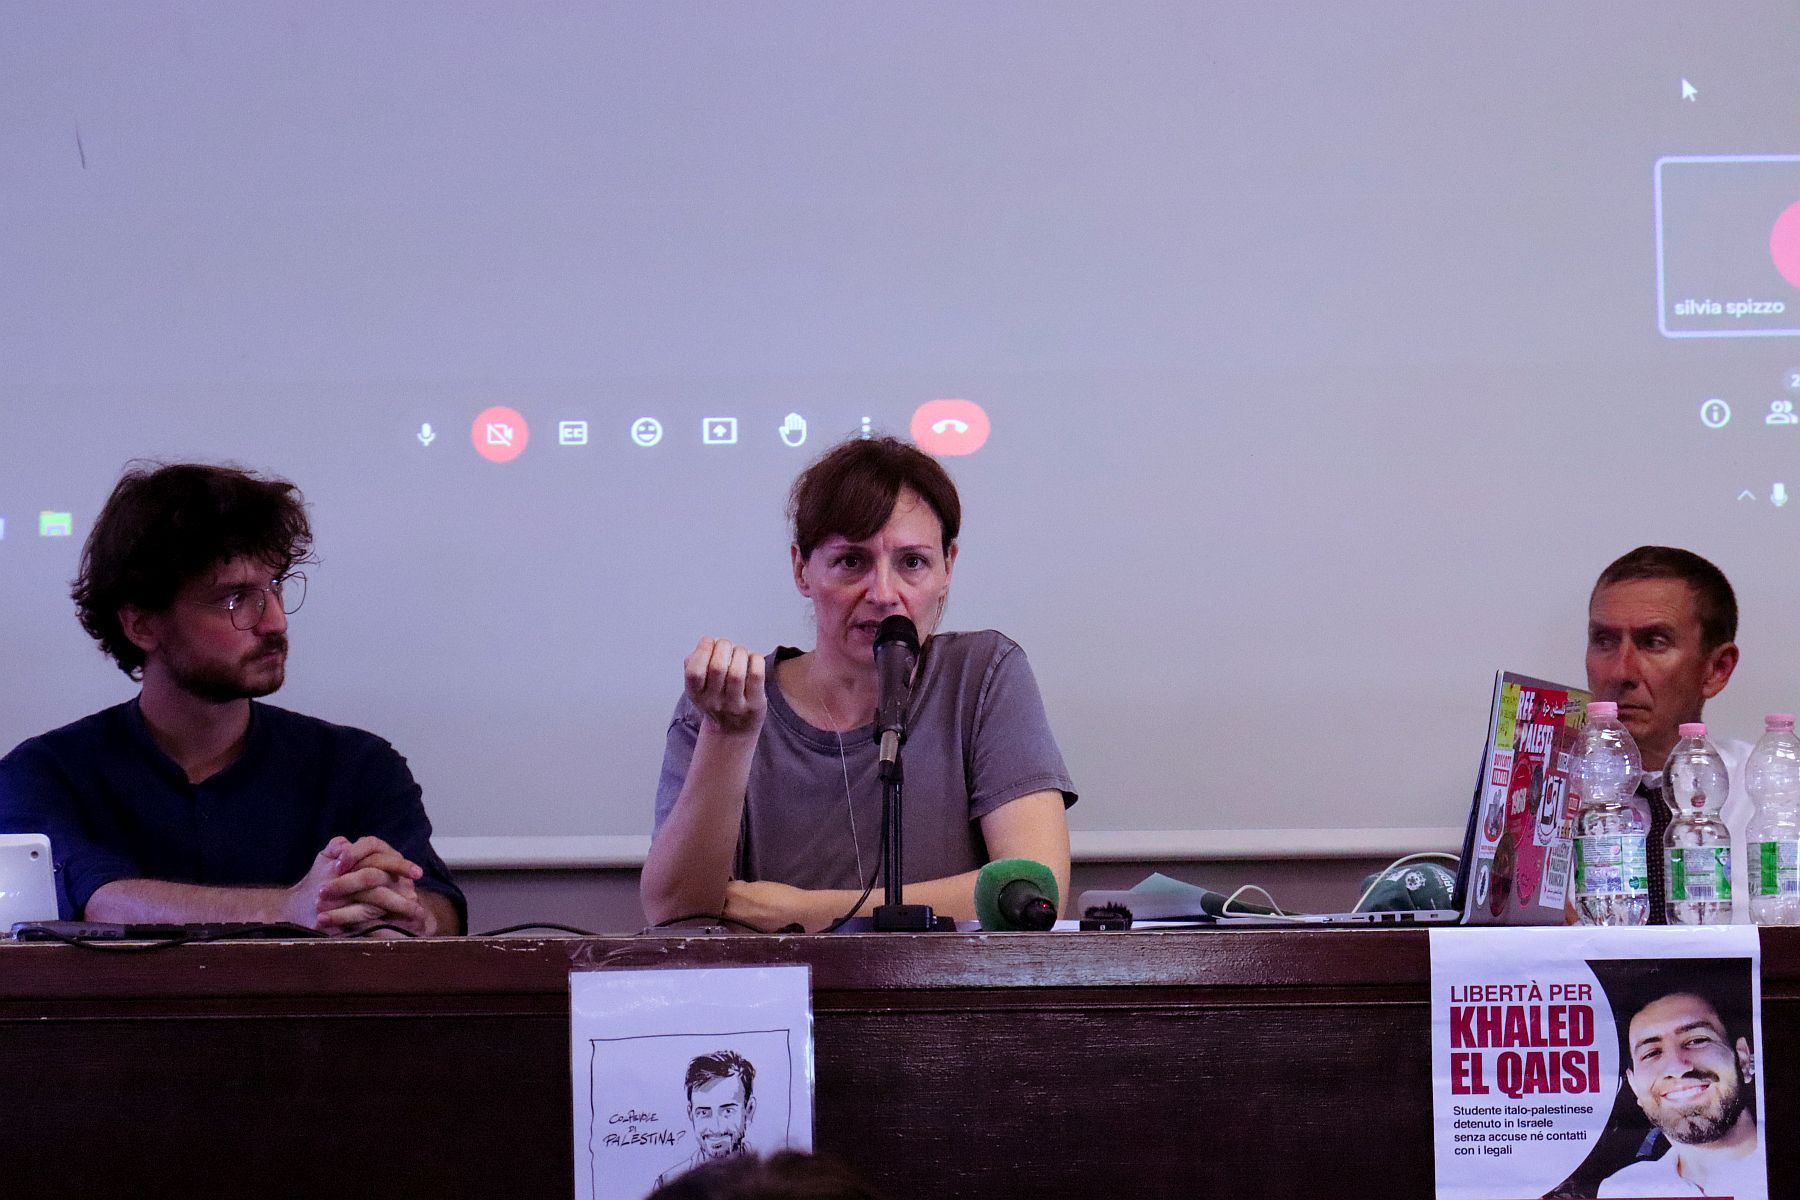 המחאה למען שחרורו צוברת תאוצה. פרנצ'סקה אנטונוצ'י, אשתו של ח'לאד אל-קאיסי (במרכז) באירוע למען שחרורו באוניברסיטה לא ספיינצה ברומא, ספטמבר 2023 (צילום: יאקופו סמריליו)